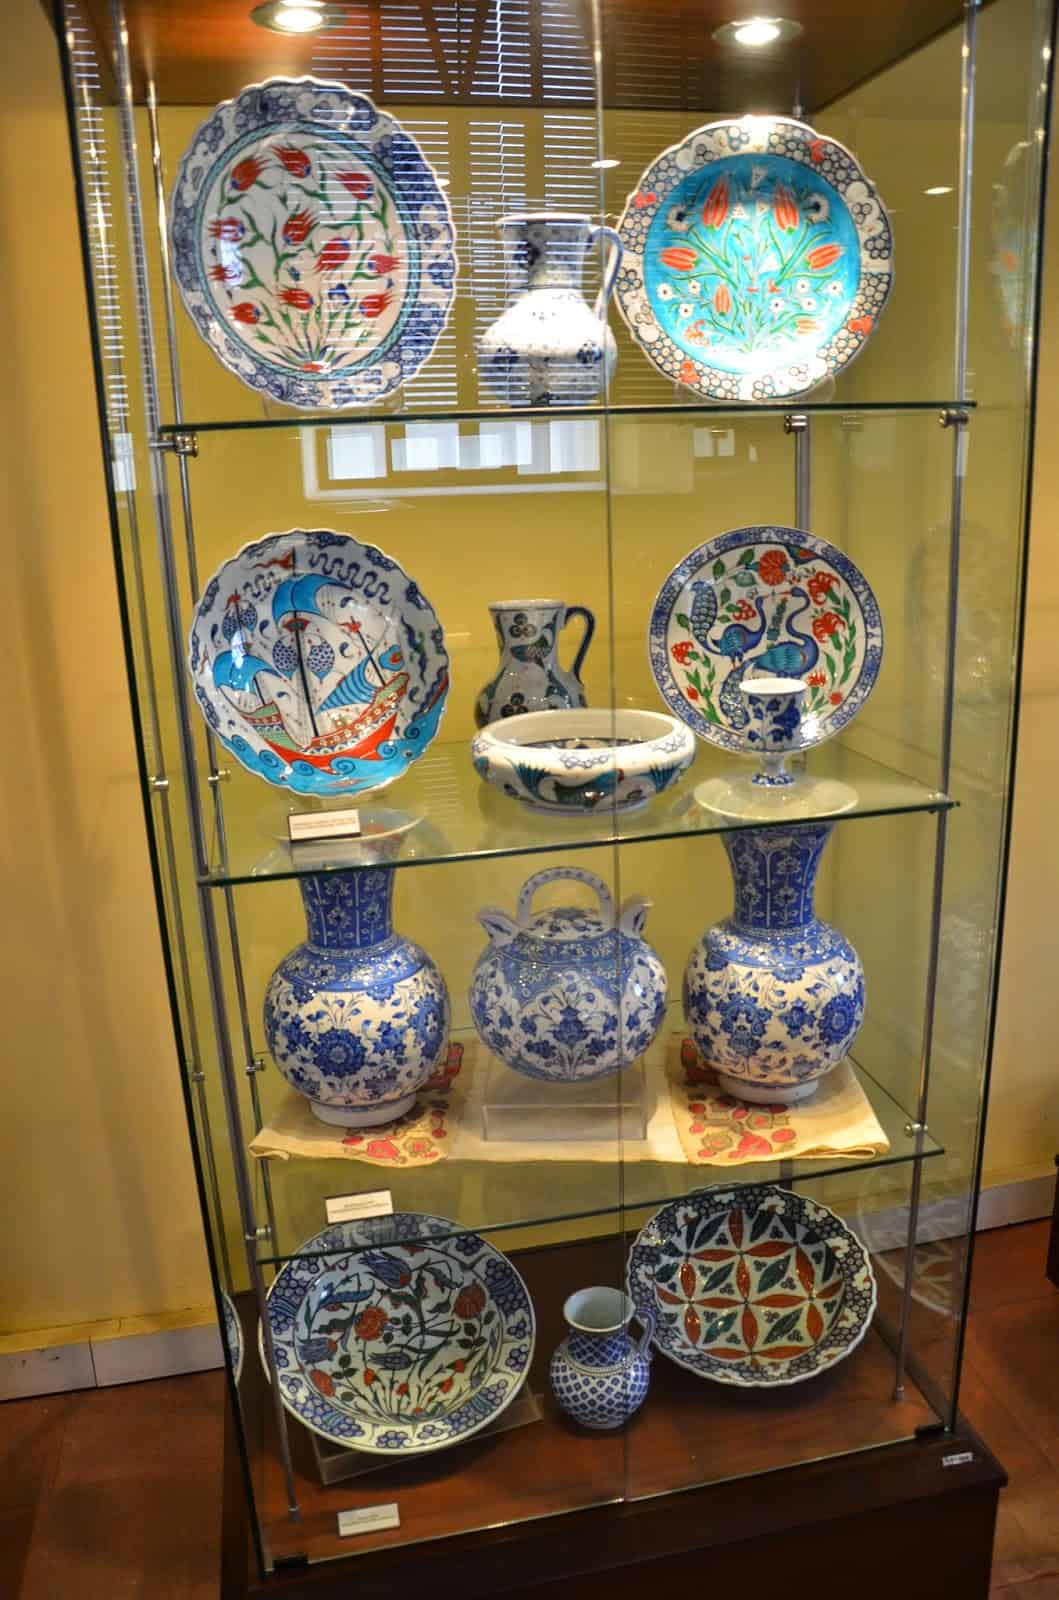 Kütahya ceramics at the Tile Museum in Kütahya, Turkey